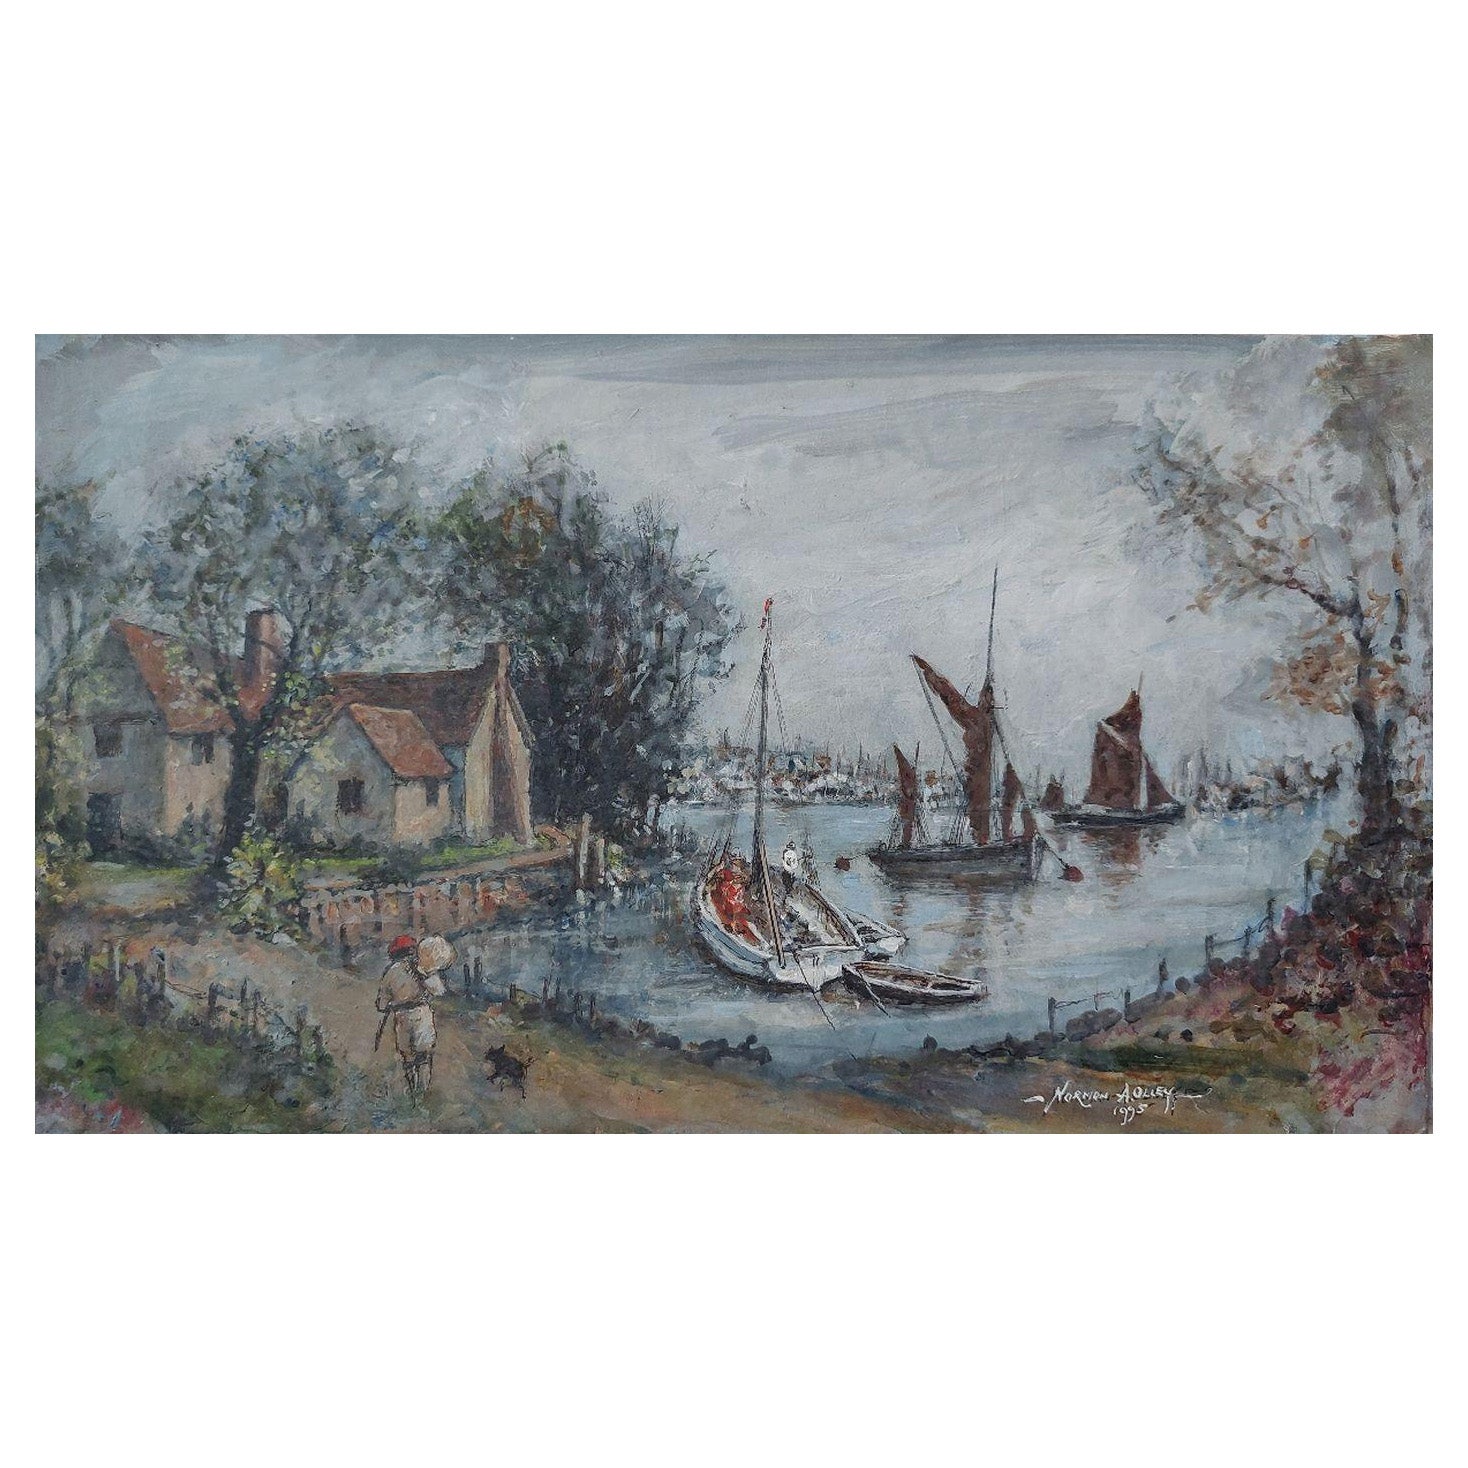 Traditionelles englisches Gemälde mit maritimen Szenen auf dem Fluss Medway, Kent, England